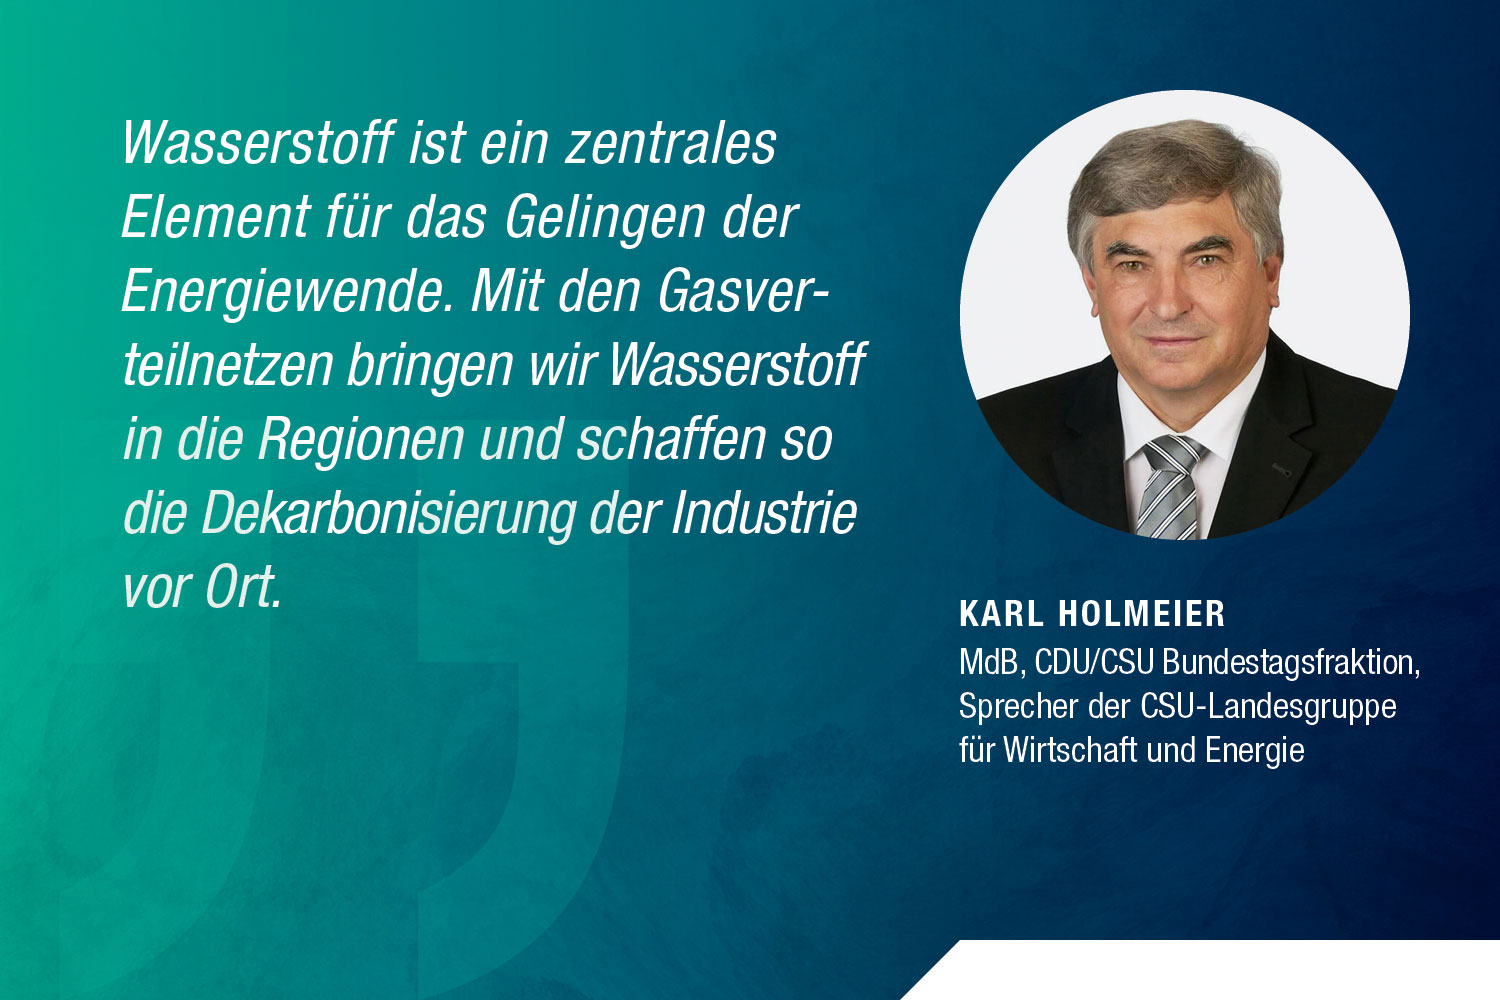 Karl Holmeier, MdB, CDU/CSU Bundestagsfraktion, Sprecher der CSU-Landesgruppe für Wirtschaft und Energie